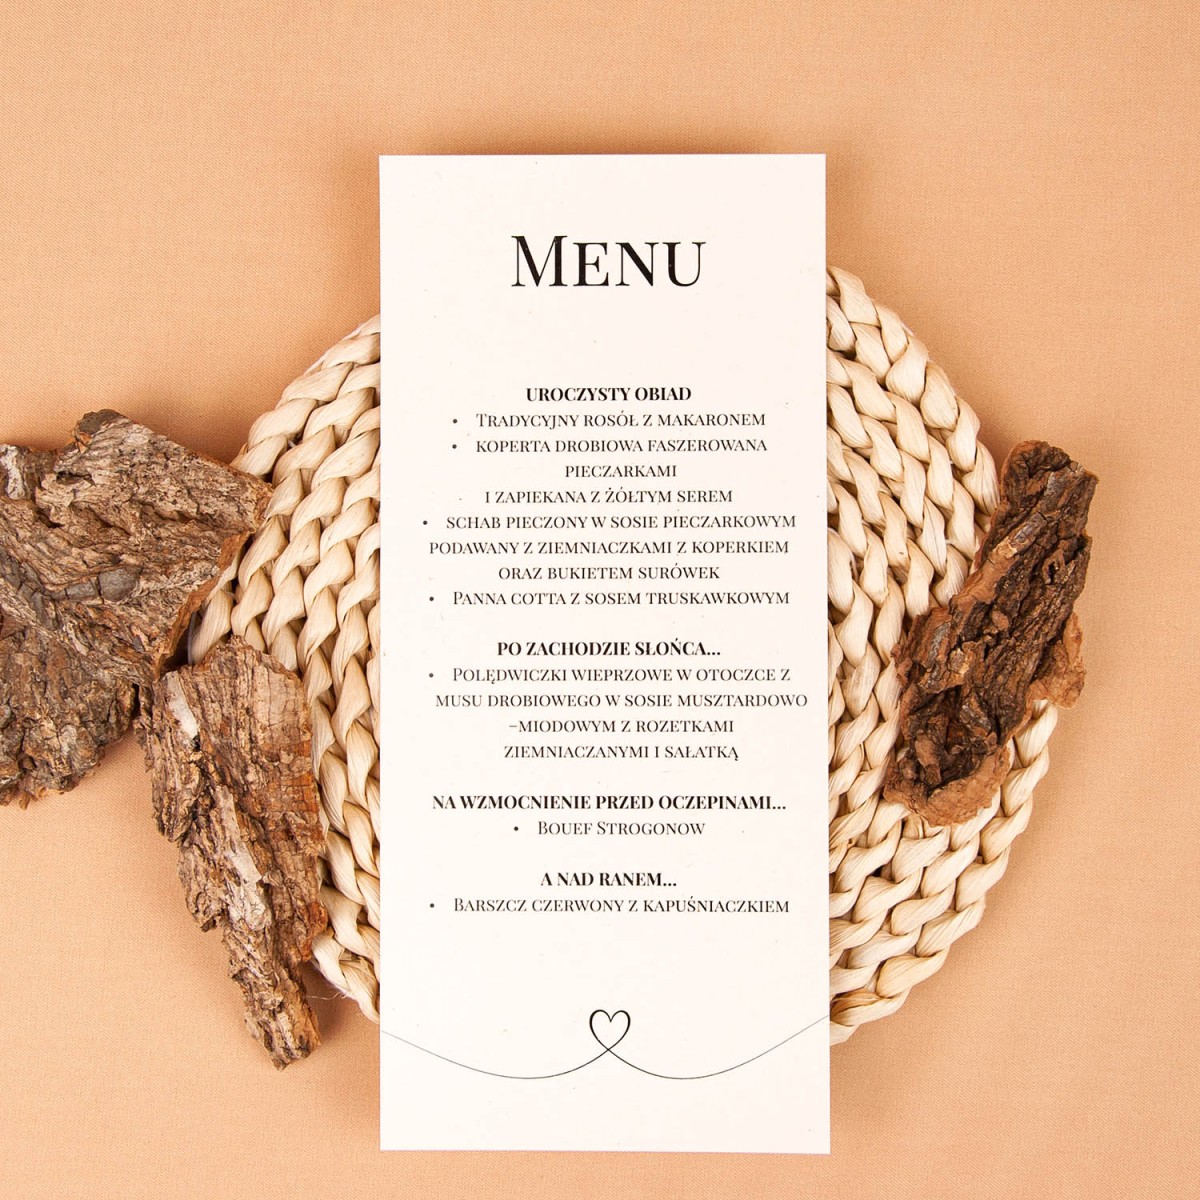 Jednokartowe menu na stoły weselne drukowane na jasnym ekologicznym papierze - Rural White